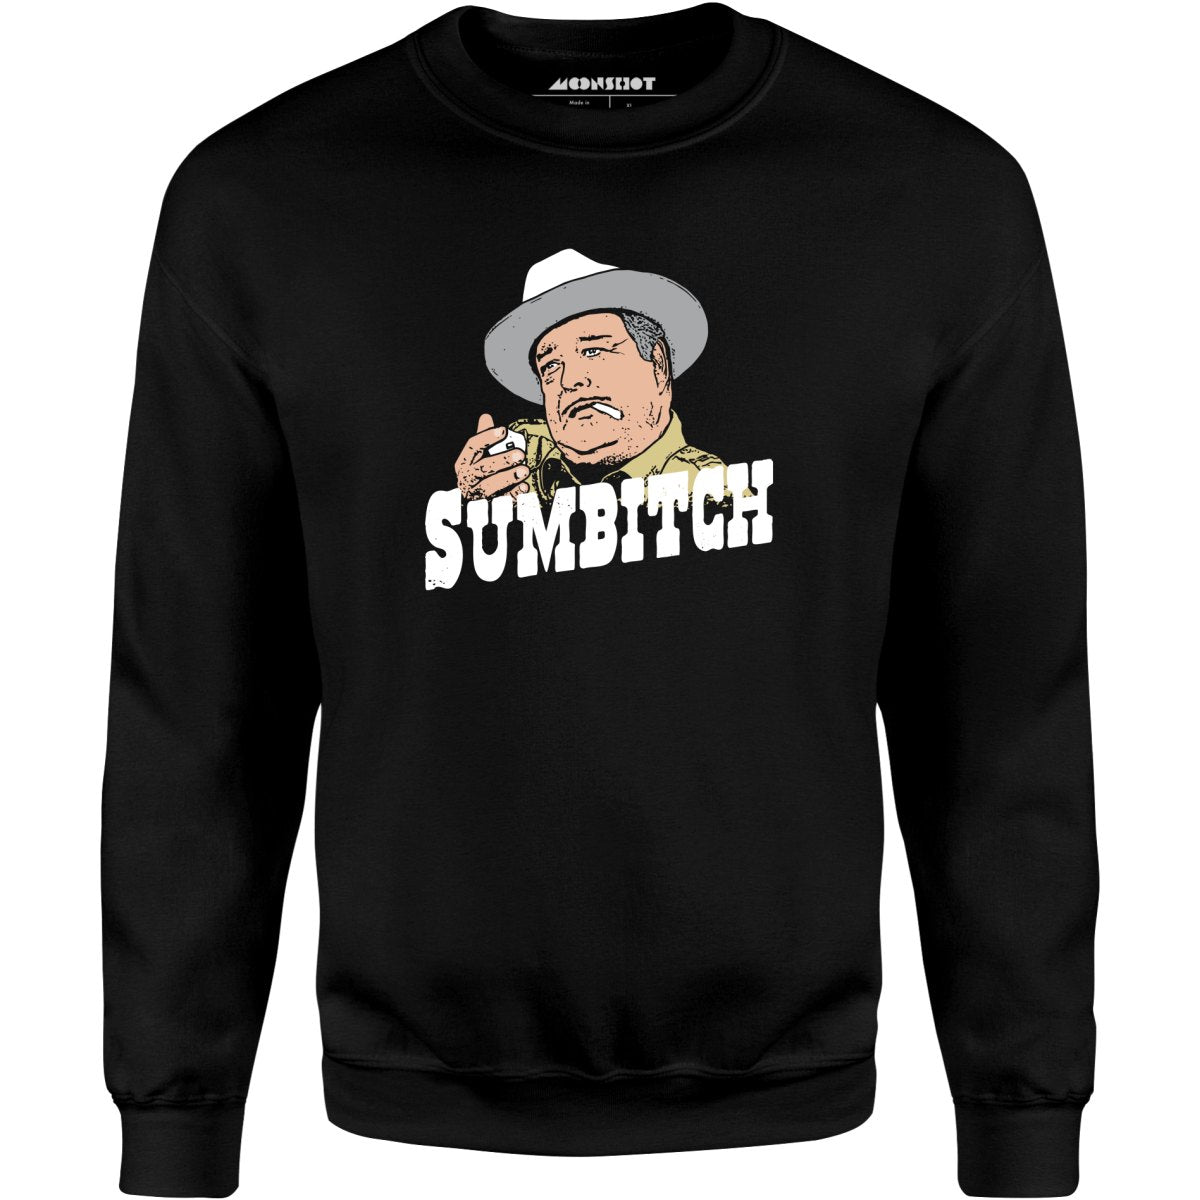 Sumbitch - Unisex Sweatshirt